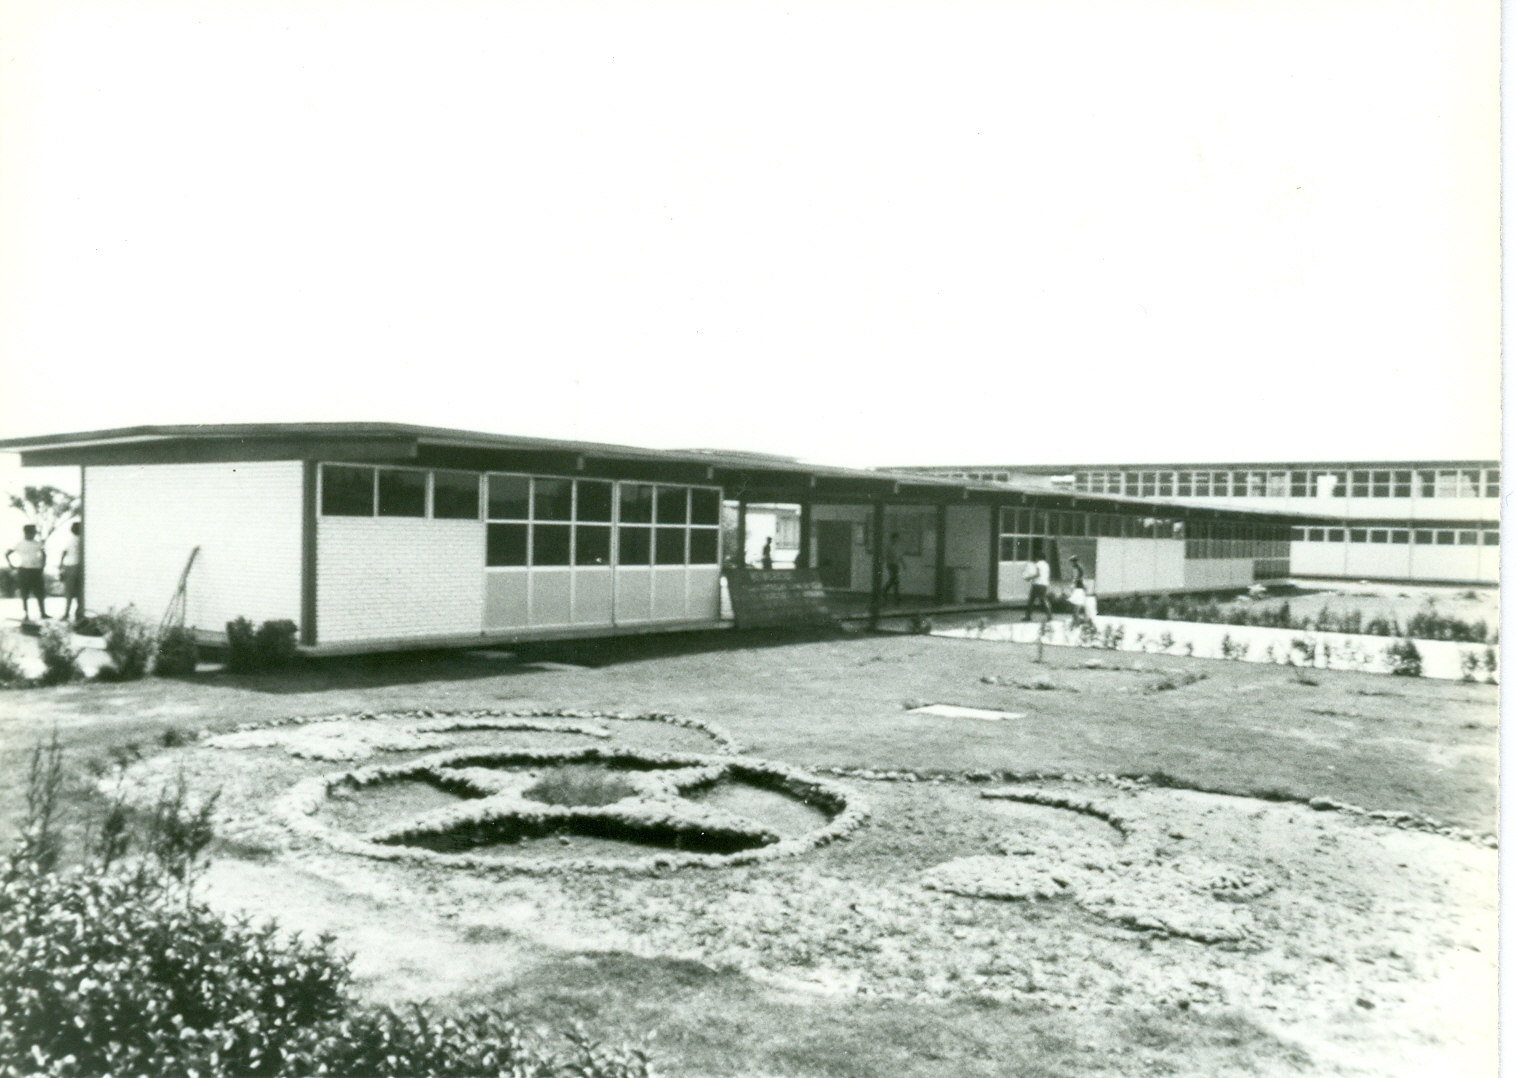 Instalaciones Plantel Azcapotzalco. ca. 1971